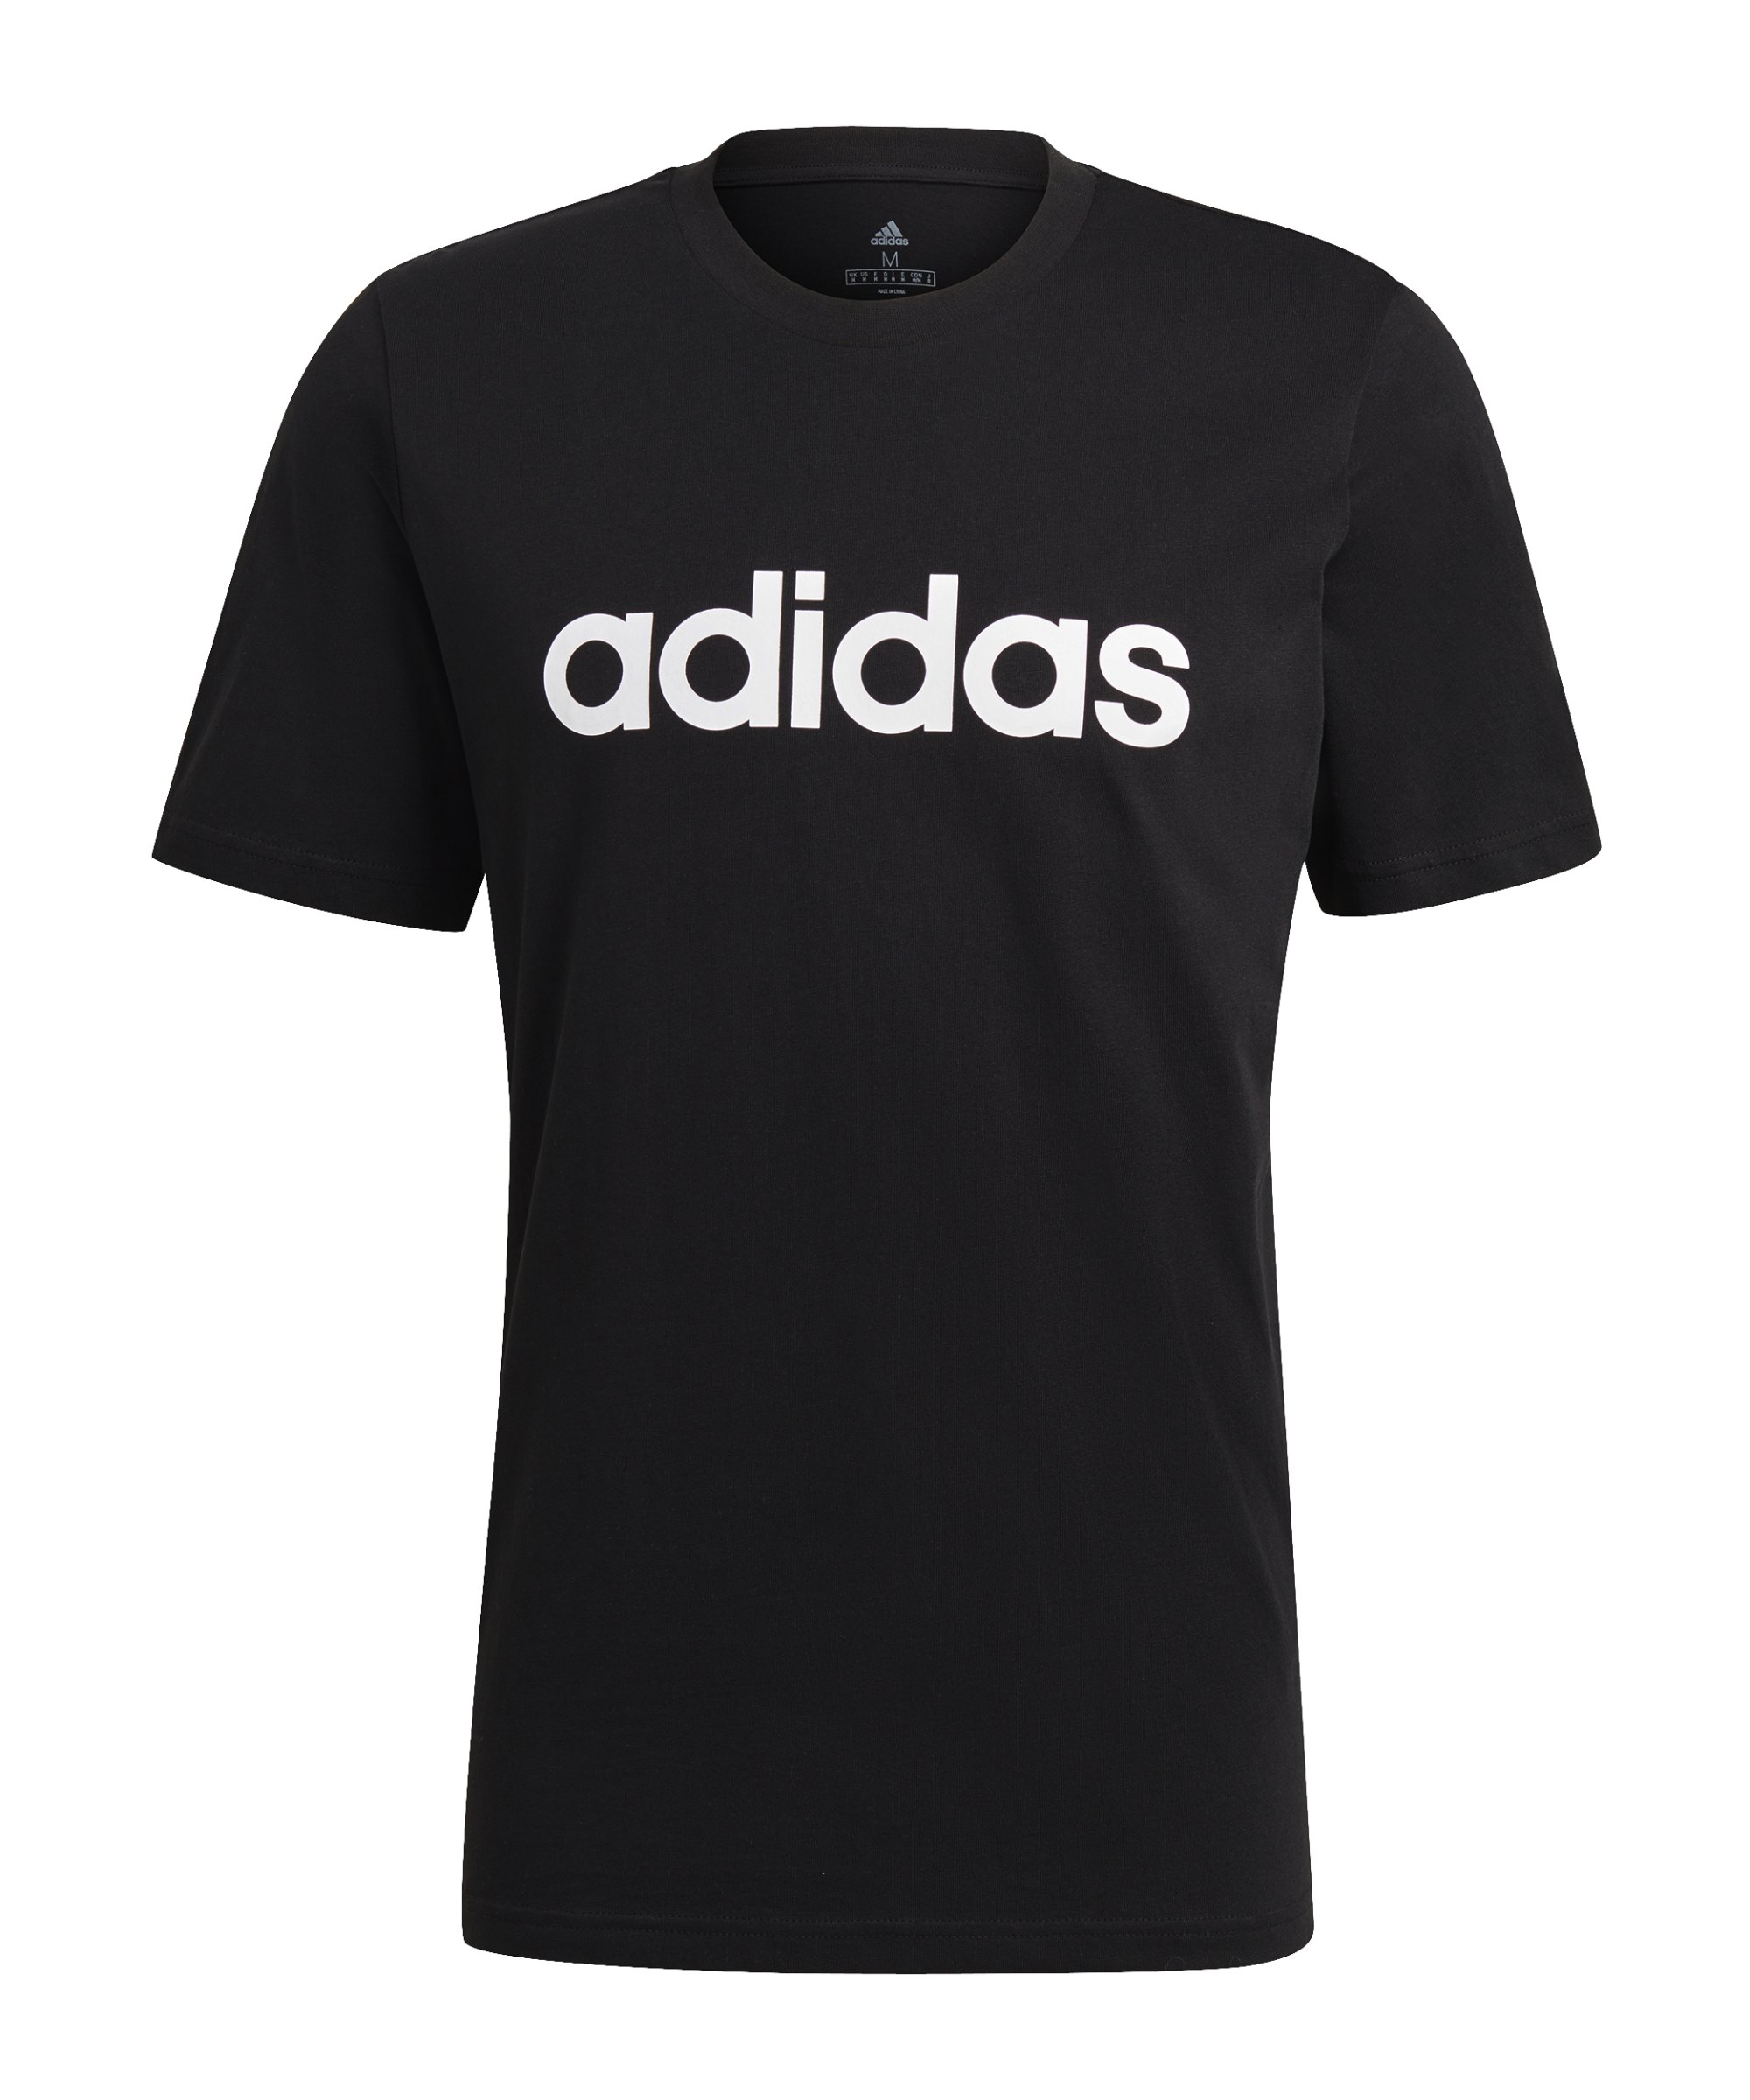 adidas Essentials T-Shirt Schwarz Weiss - schwarz